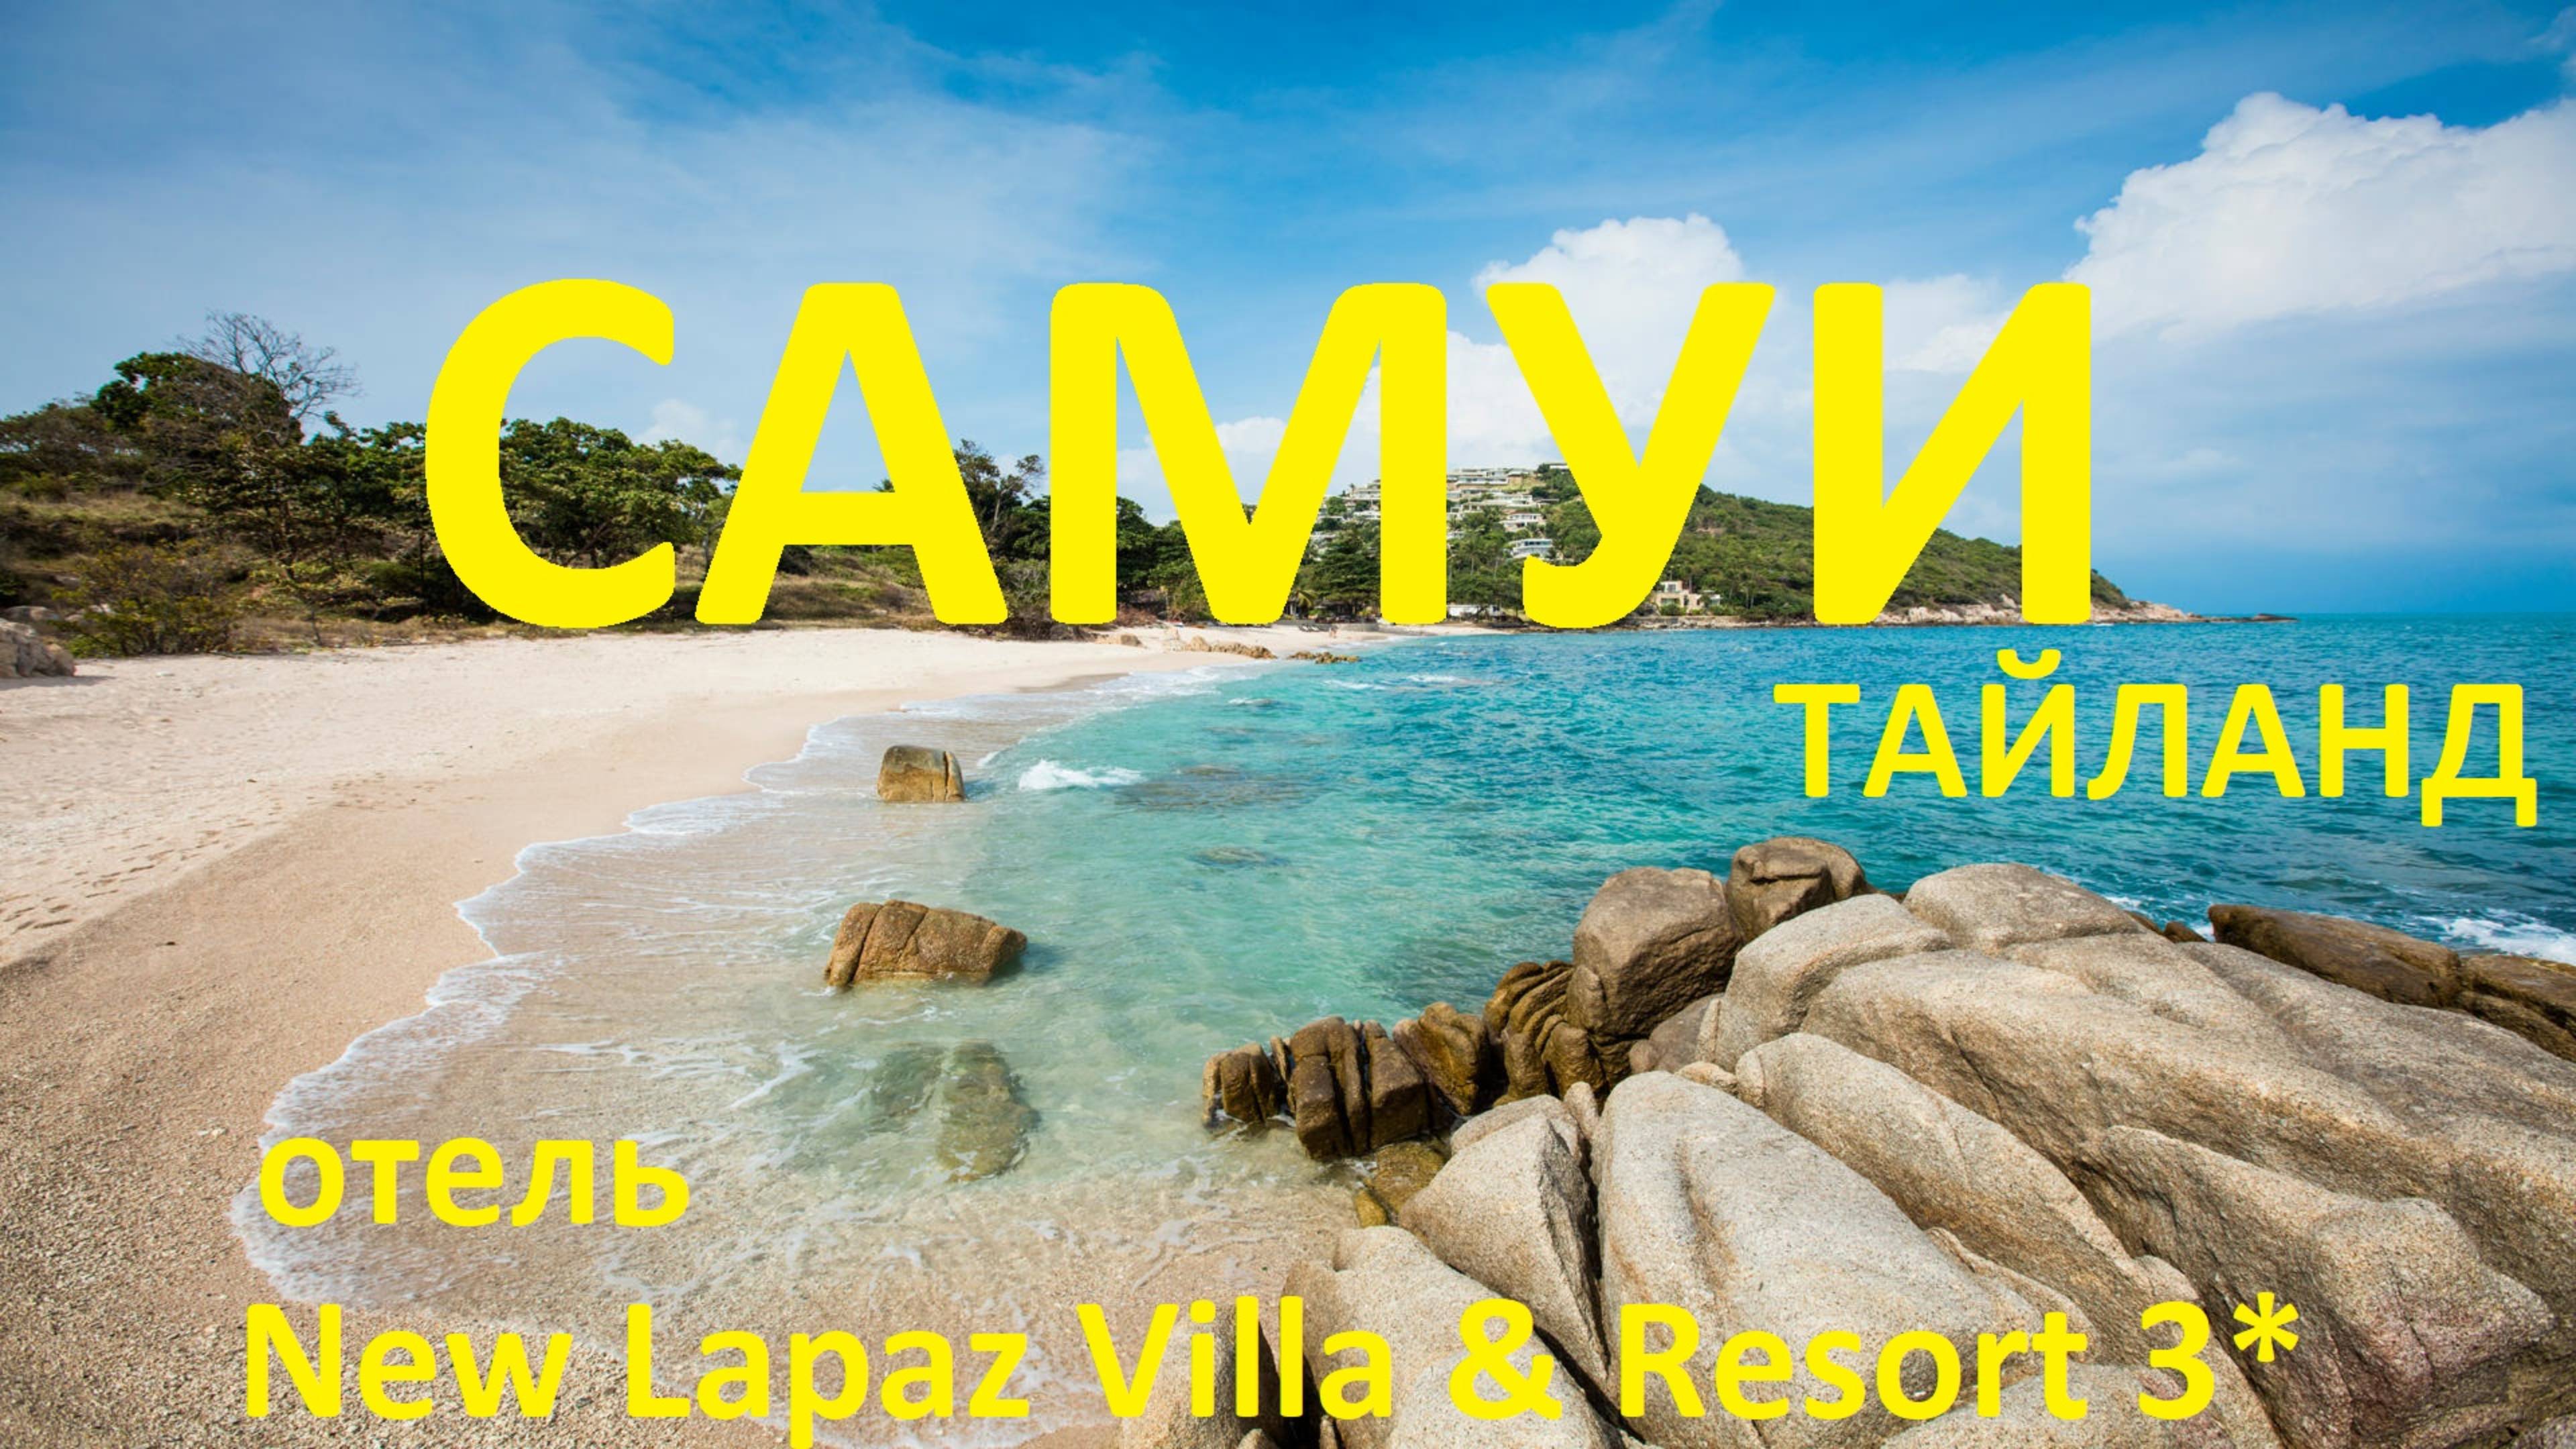 Тайланд. Остров Самуи. New Lapaz Villa 3 Resort 3* обзор отеля. Часть 1